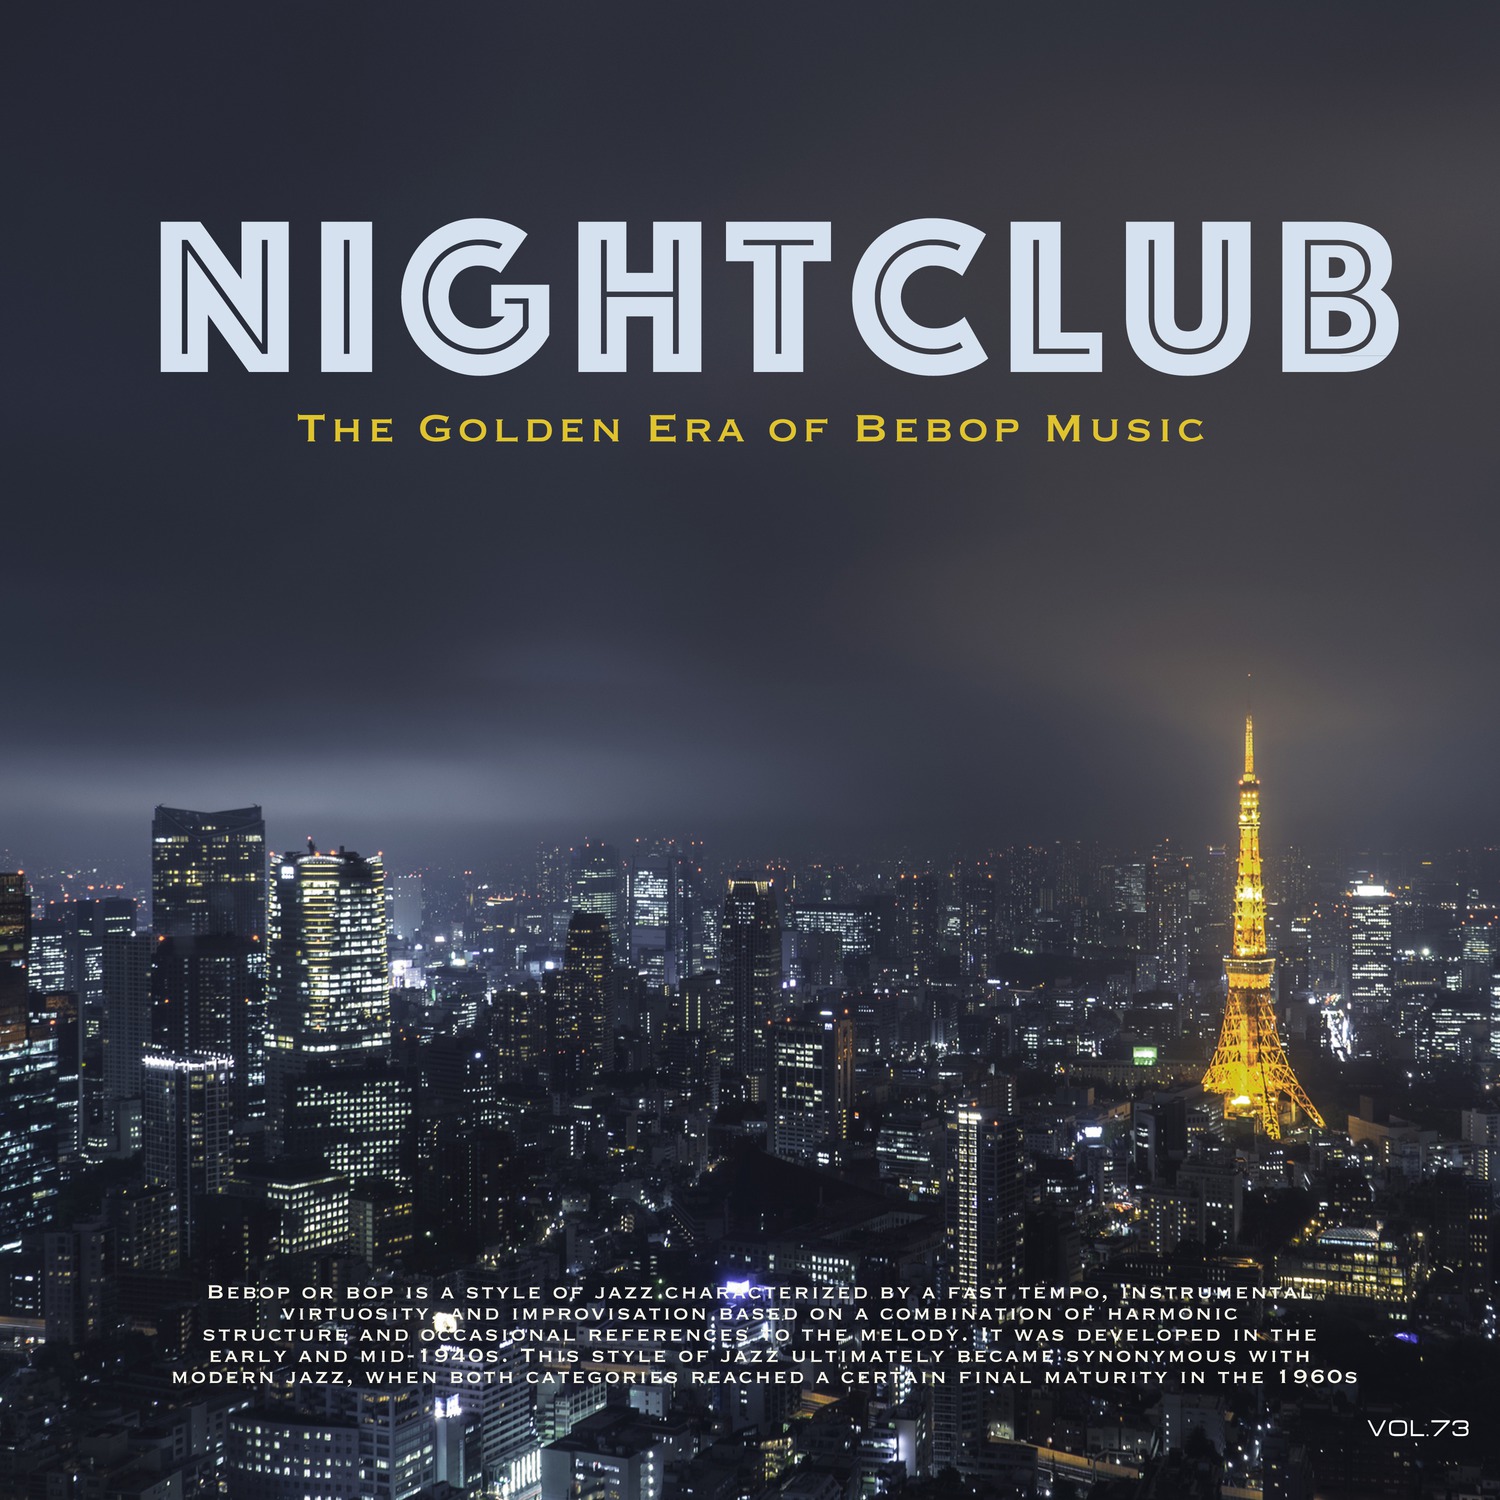 Nightclub, Vol. 73 (The Golden Era of Bebop Music)